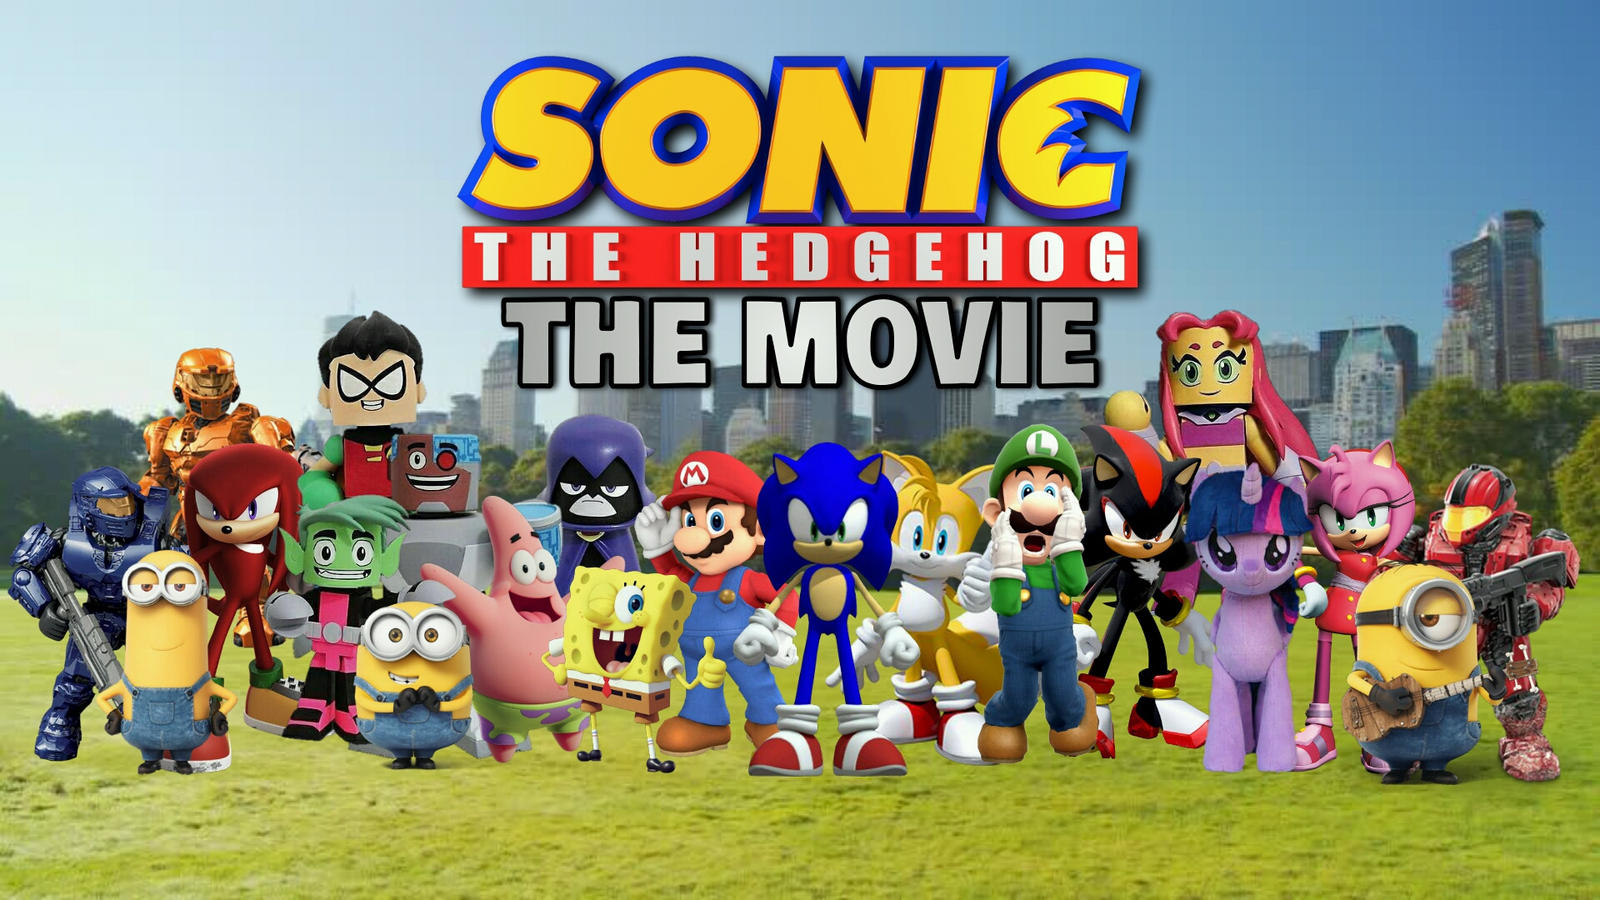 Sonic the hedgehog 4 movie poster remake final V3! : r/SonicTheMovie